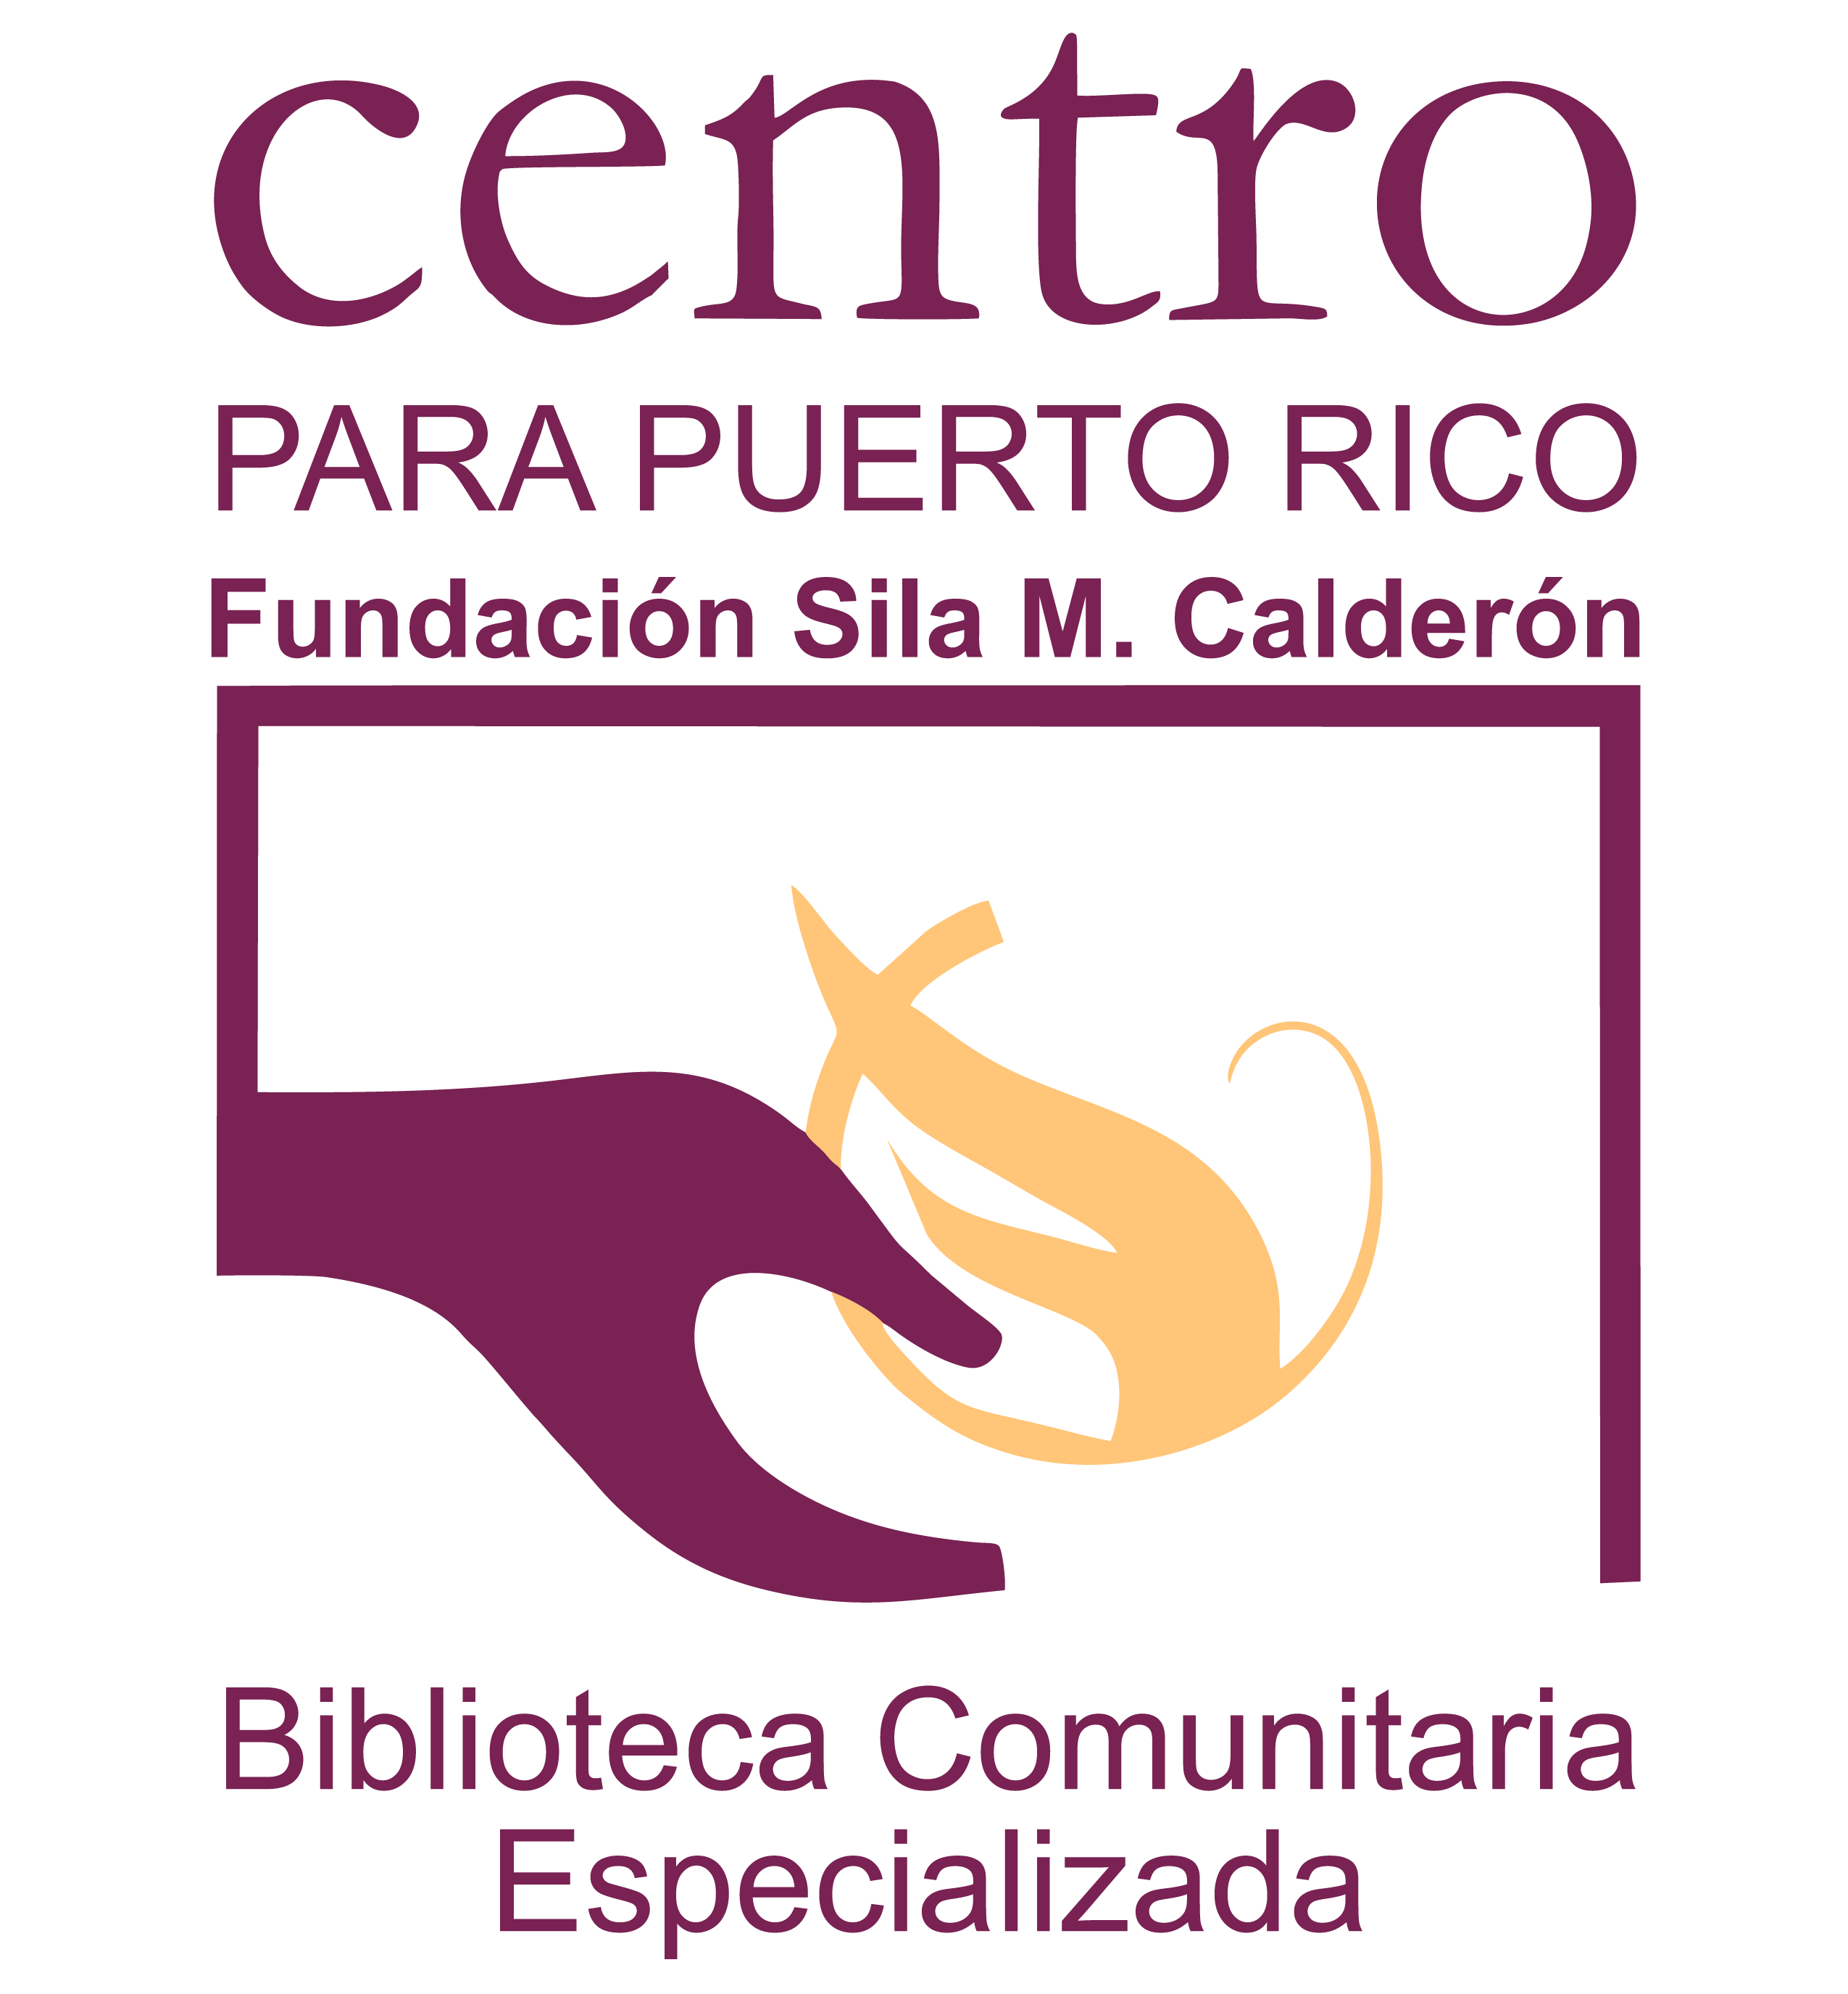 Biblioteca Centro para Puerto Rico